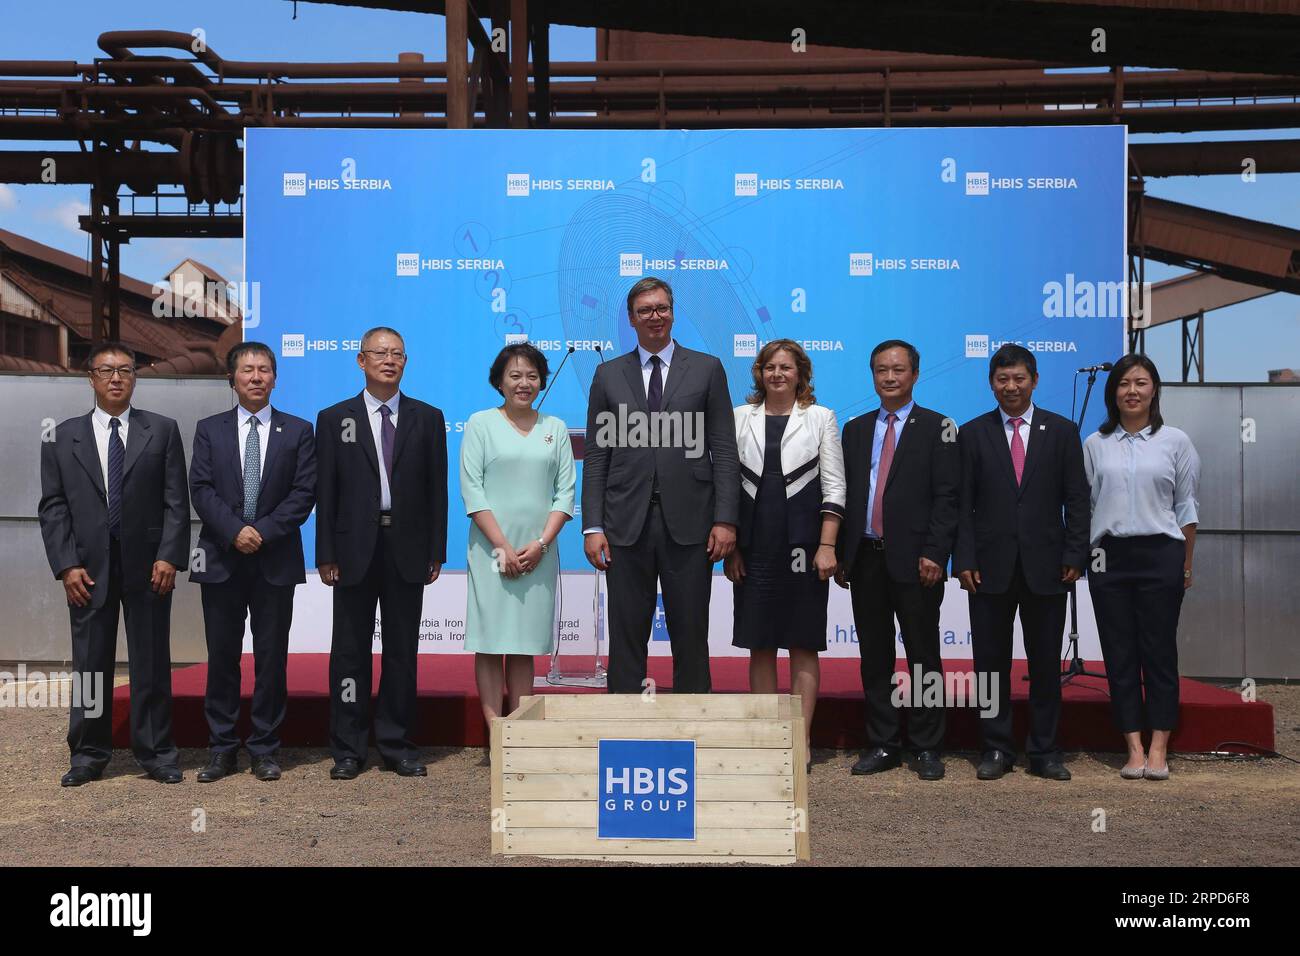 (190724) -- SMEDEREVO, 24 juillet 2019 -- le président serbe Aleksandar Vucic (C), l'ambassadeur chinois en Serbie Chen Bo (4e L) et le président de HBIS Serbie Wang Yulan (3e R) posent pour des photos avec d'autres lors de la cérémonie d'inauguration d'une nouvelle usine de frittage à l'aciérie de Smederevo, en Serbie, le 24 juillet 2019. HBIS Group Serbia Iron & Steel, investi par la Chine, a commencé mercredi la construction d'une nouvelle usine d'agglomération, visant à créer l'une des usines industrielles les plus respectueuses de l'environnement et les plus économes en énergie en Europe. Président serbe Aleksandar Vucic, chinois A Banque D'Images